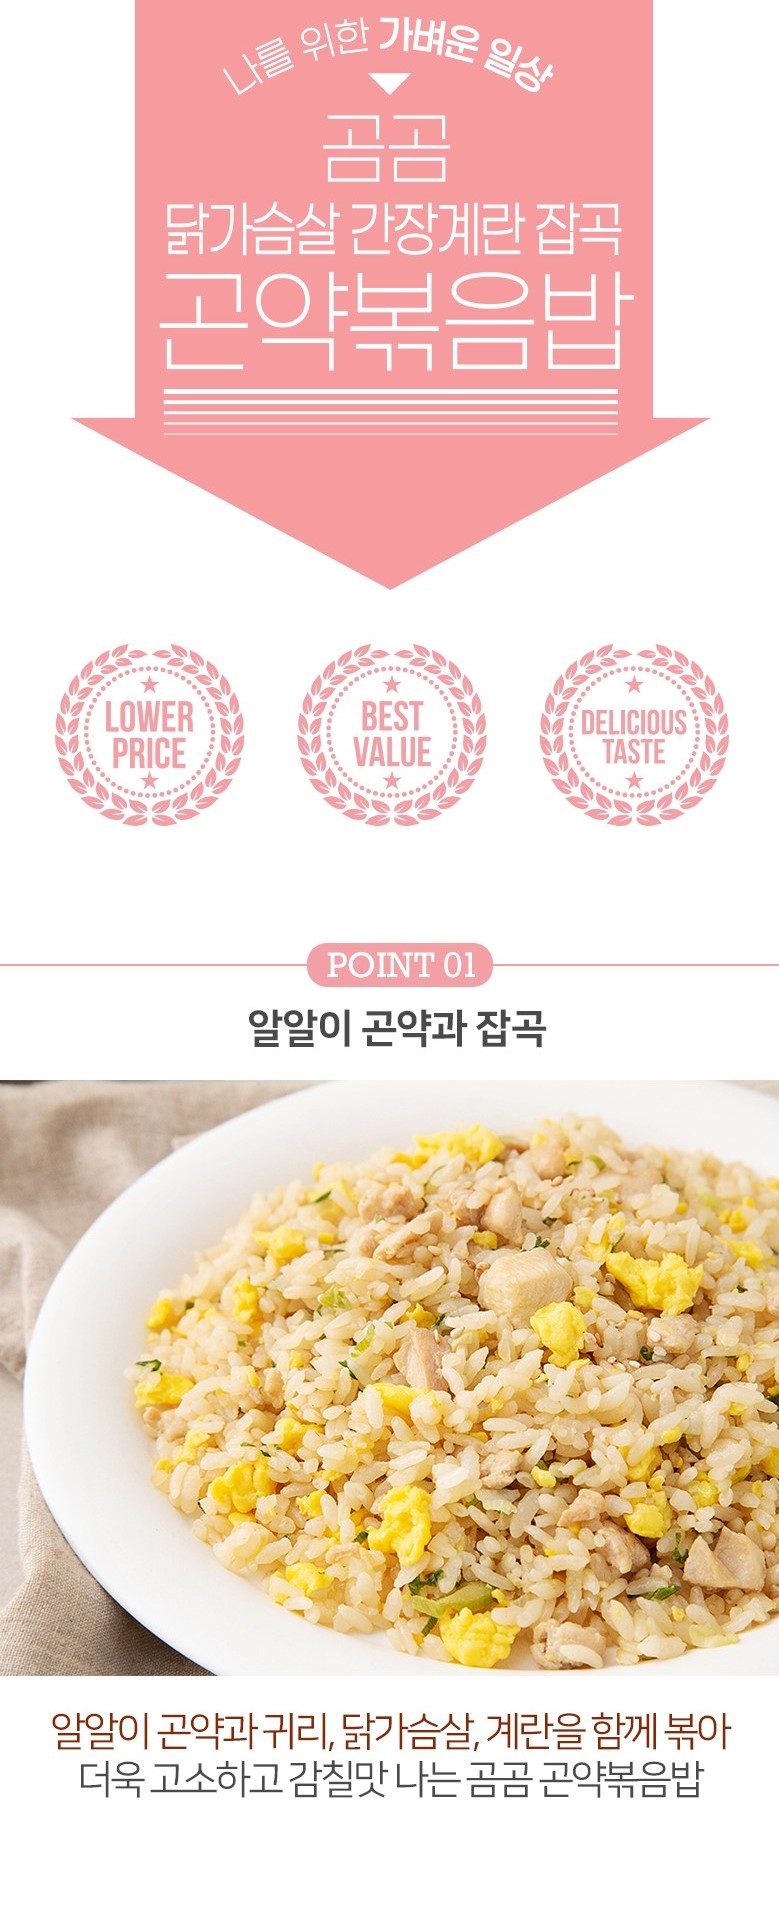 韓國食品-[Gomgom] Mixed Grains Konjac Fried Rice (Chicken Breast And Egg) 200g